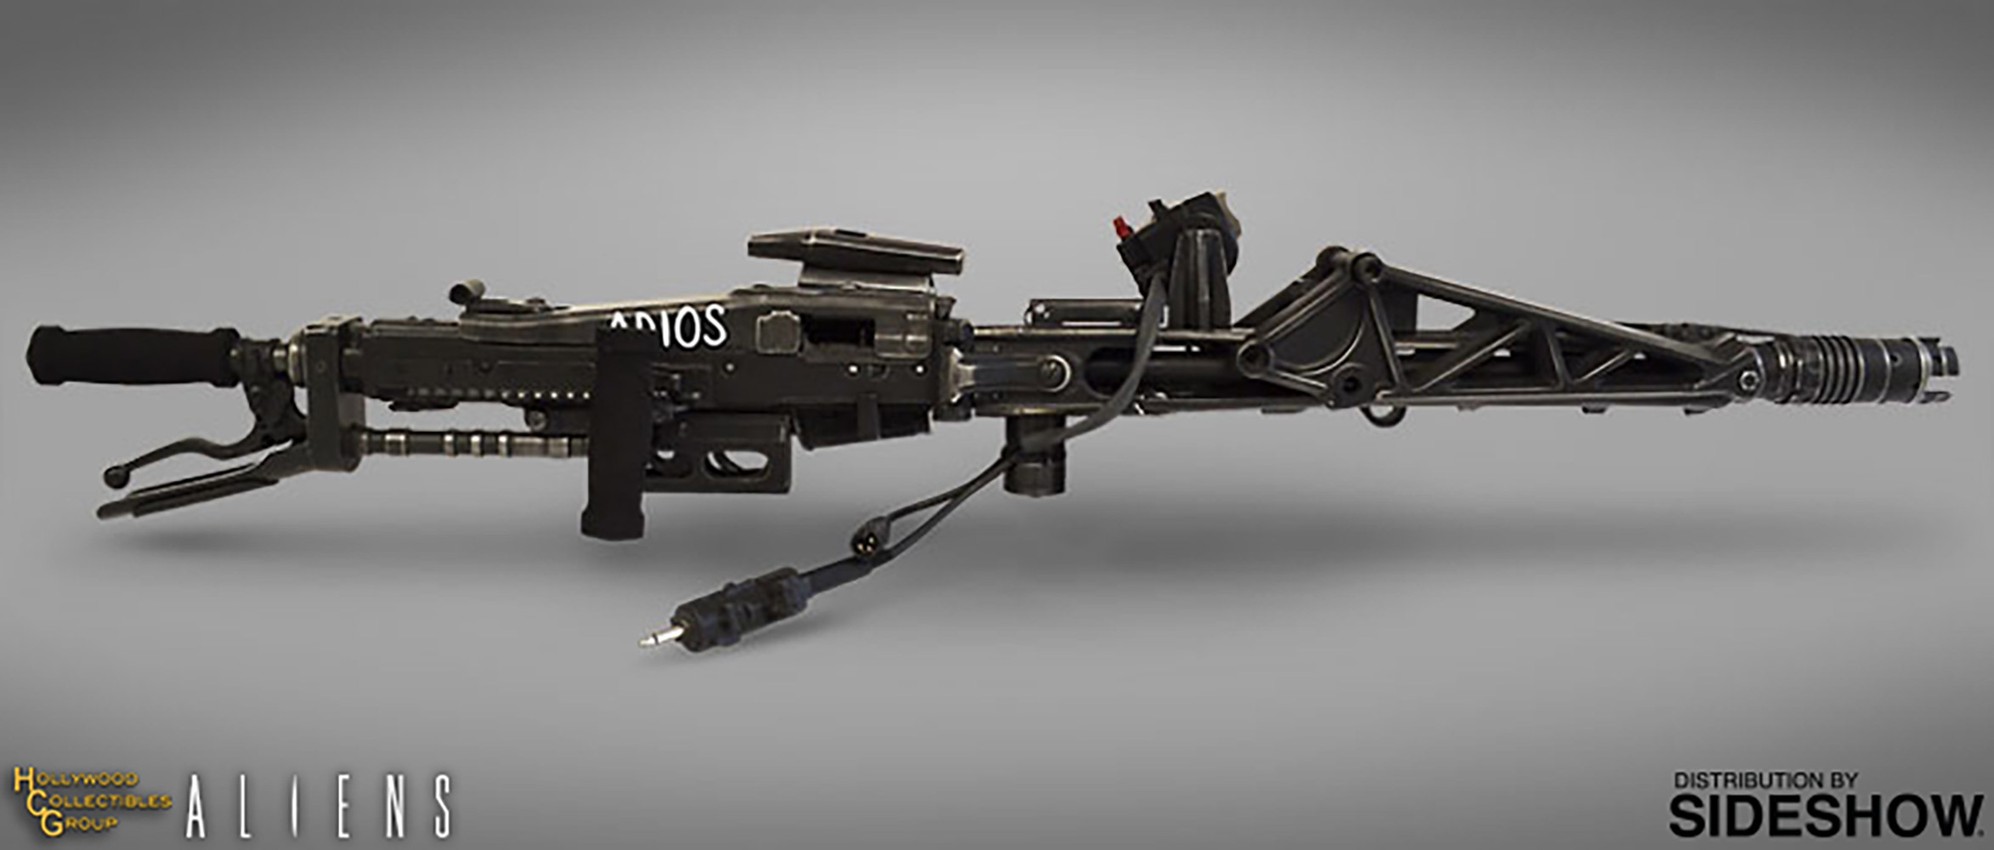 M56 Smartgun- Prototype Shown